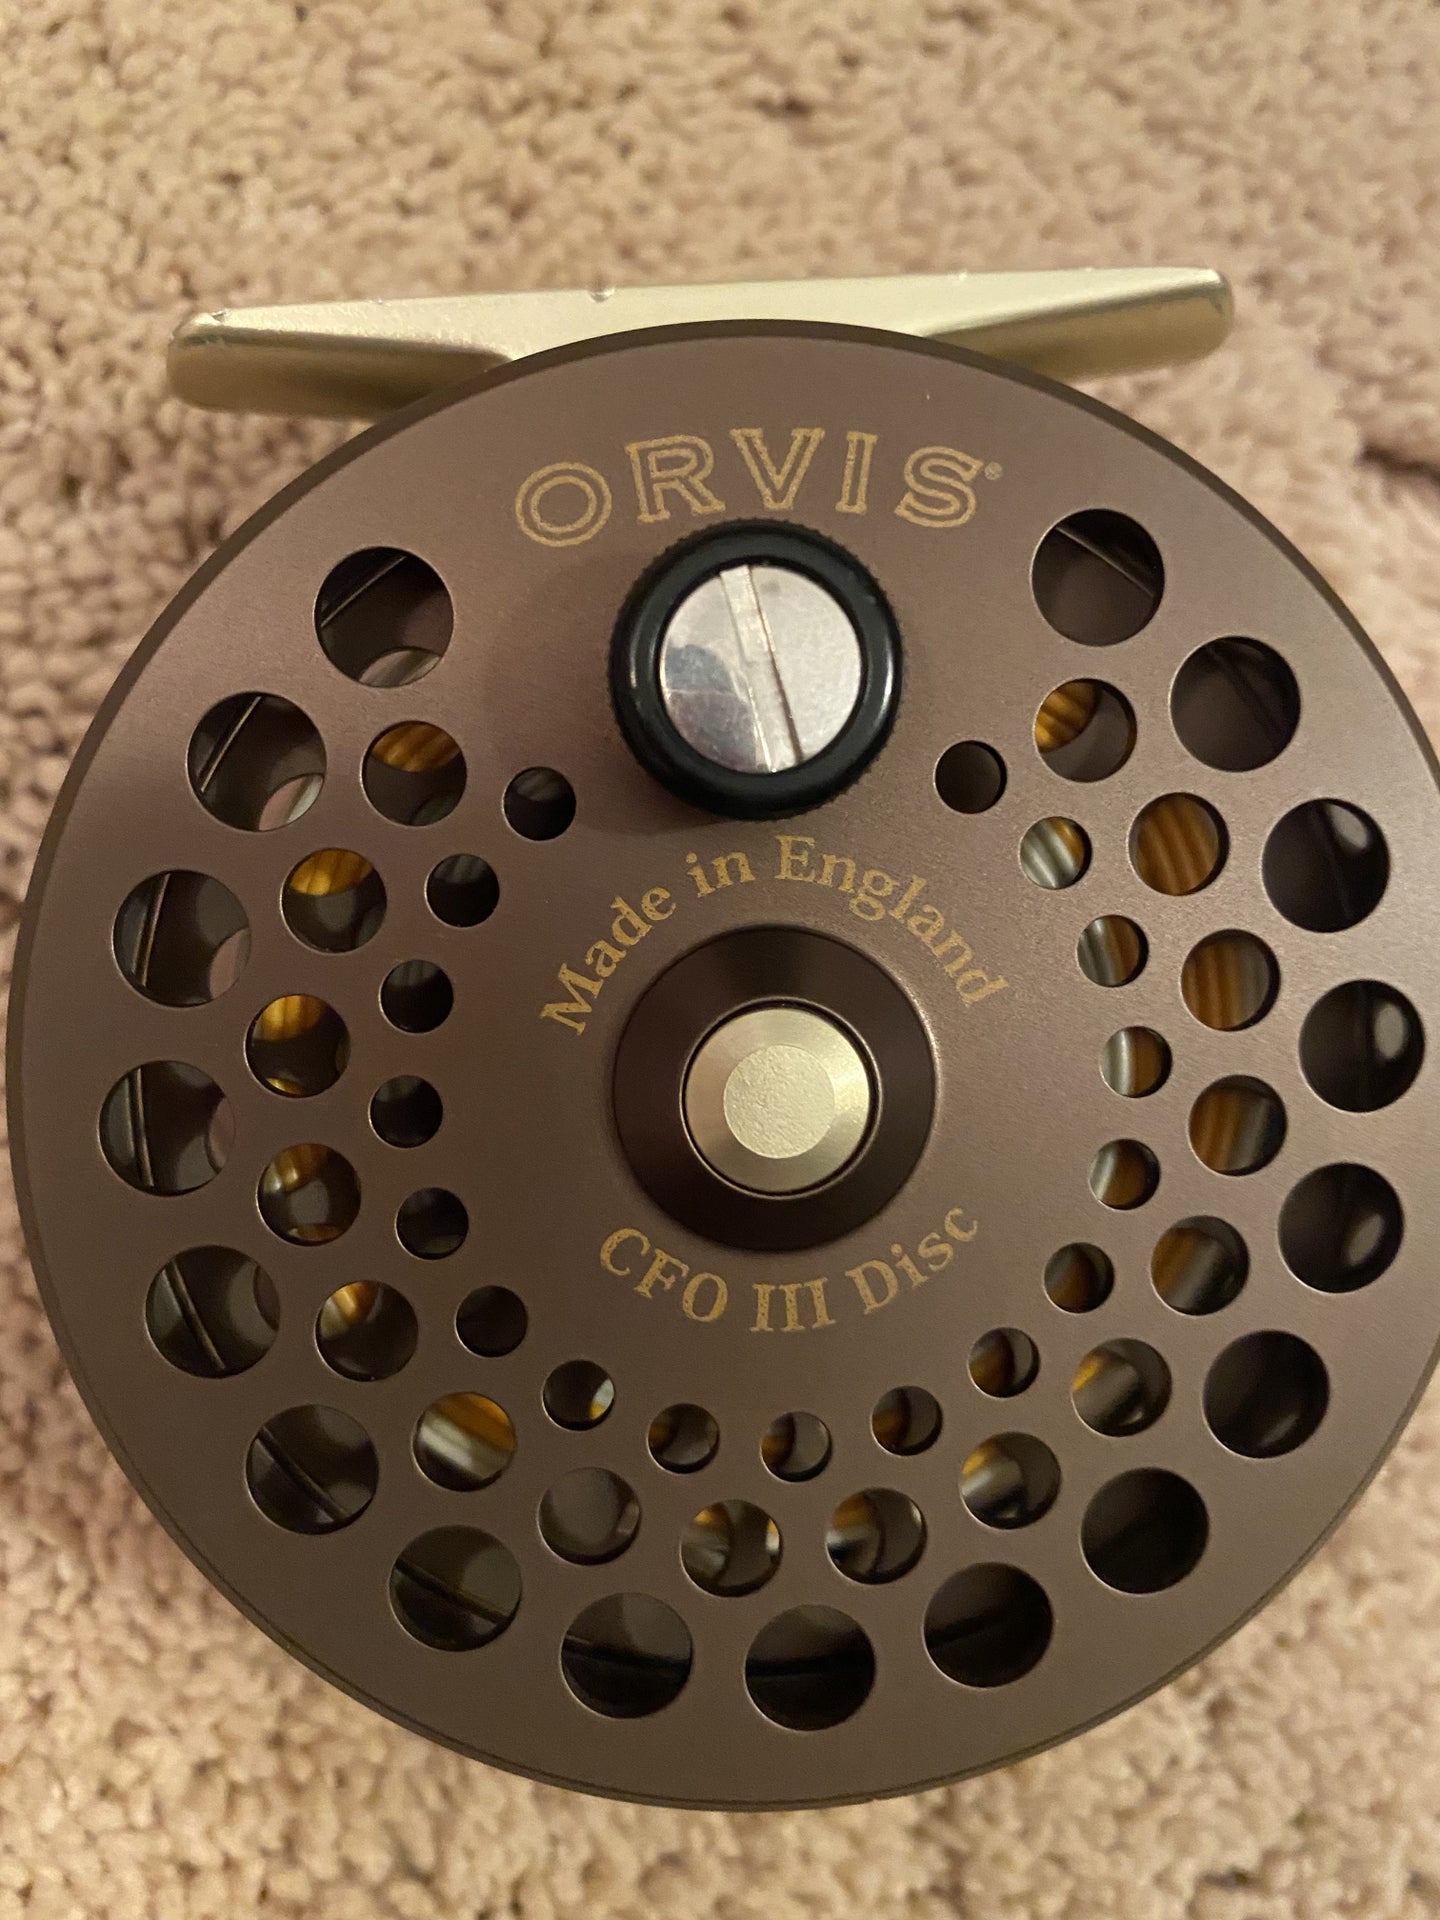 Orvis CFO III Single Hand/Trout Spey Reel- Reduced